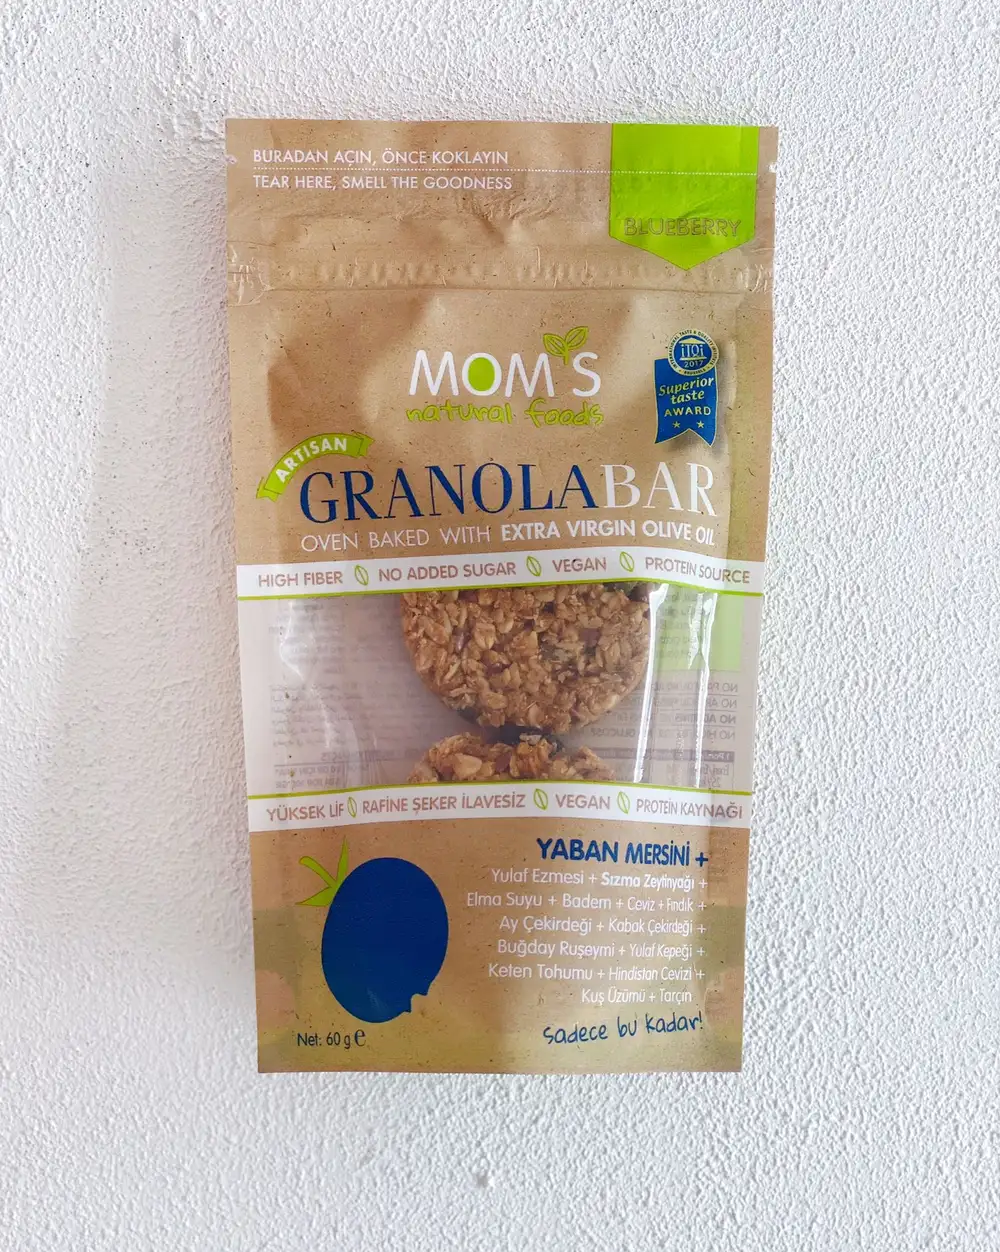 Mom's Yaban Mersini Granola  Vegan 60 Gram